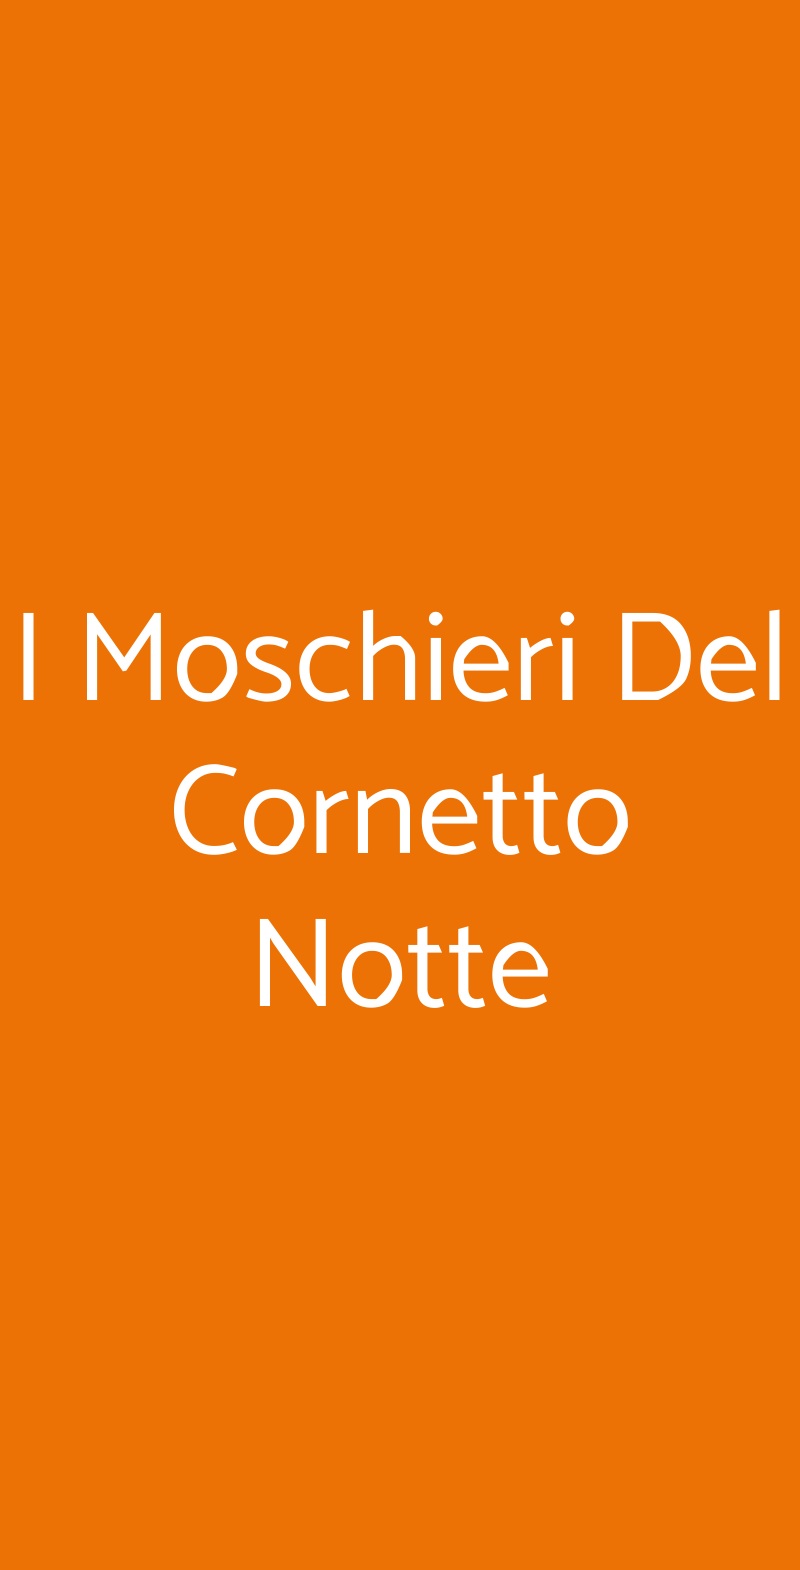 I Moschieri Del Cornetto Notte Roma menù 1 pagina